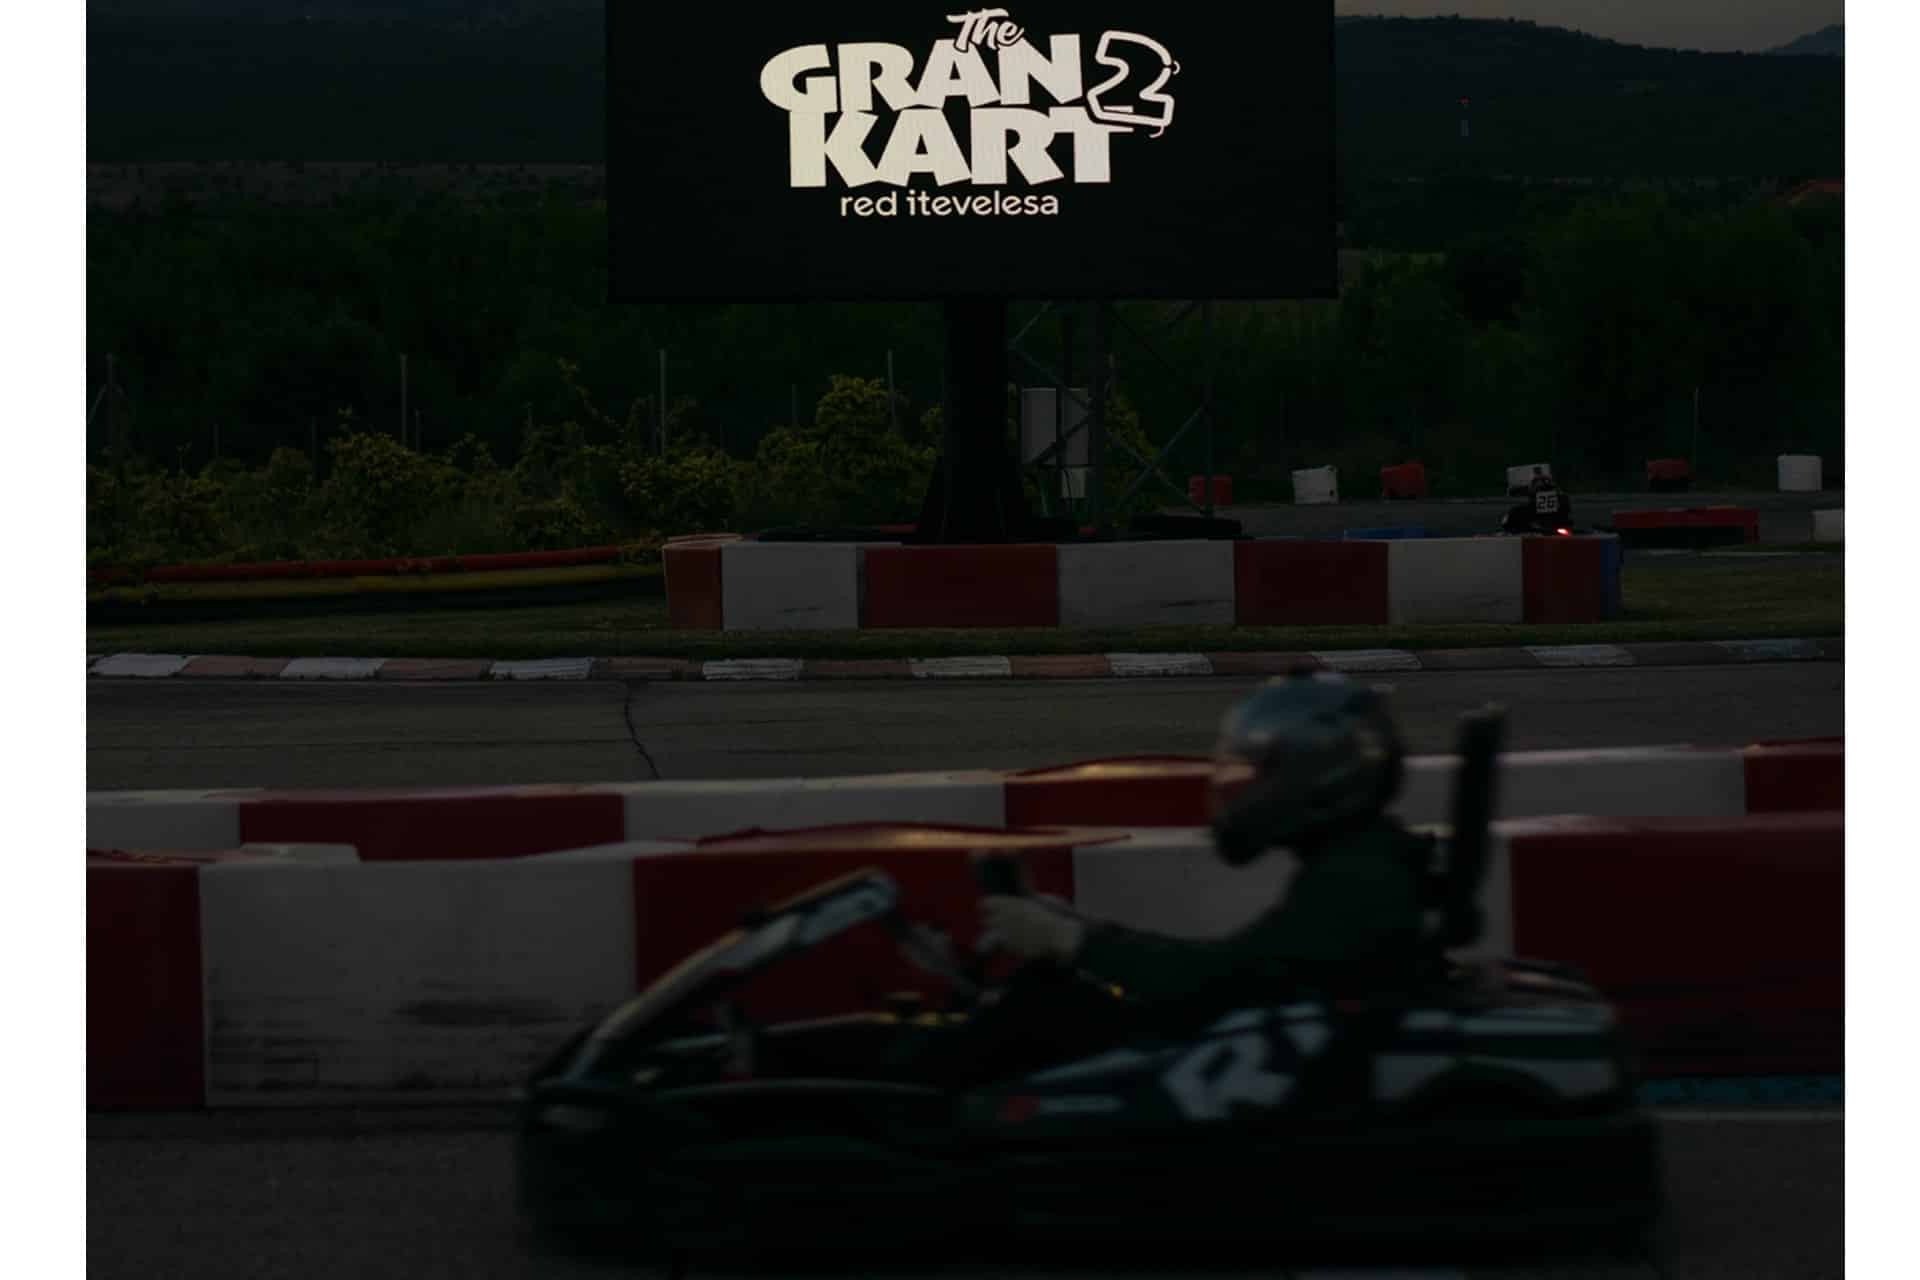 Red Itevelesa, celebra con éxito la 2ª edición de su evento "The Gran Kart"